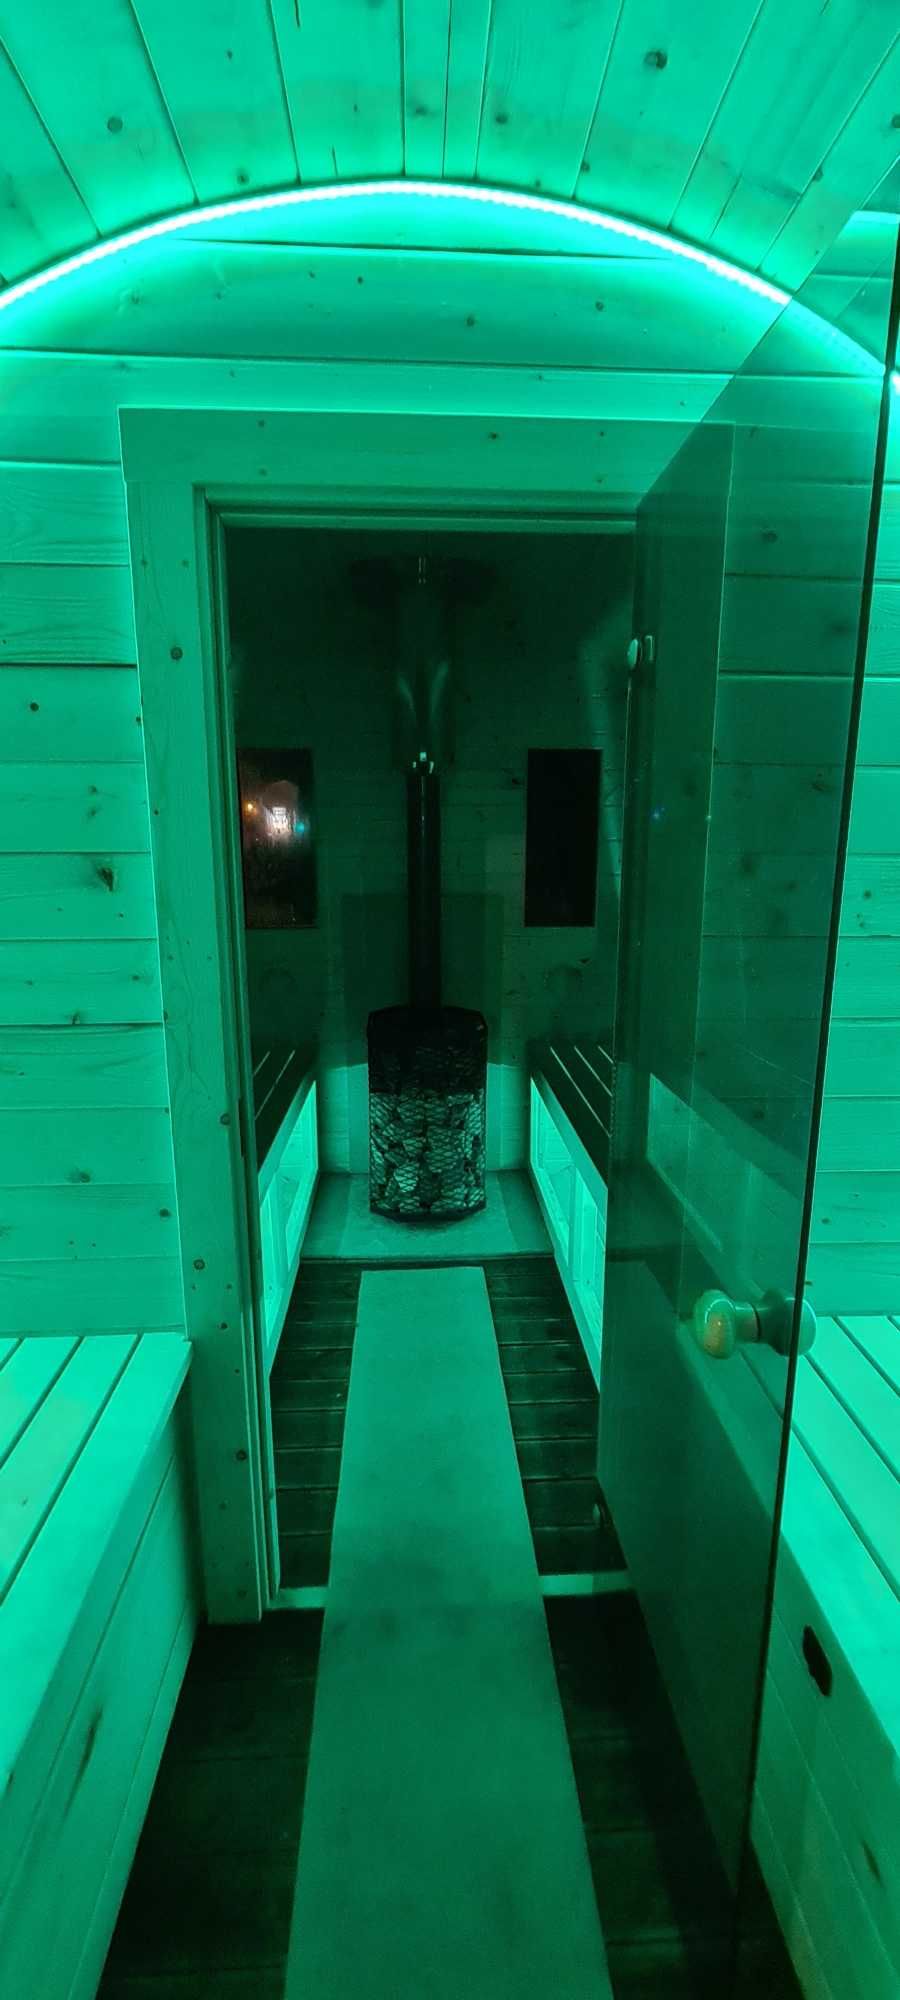 WYNAJEM!! Mobilna - sauna beczka!!!Imprezy okolicznościowe